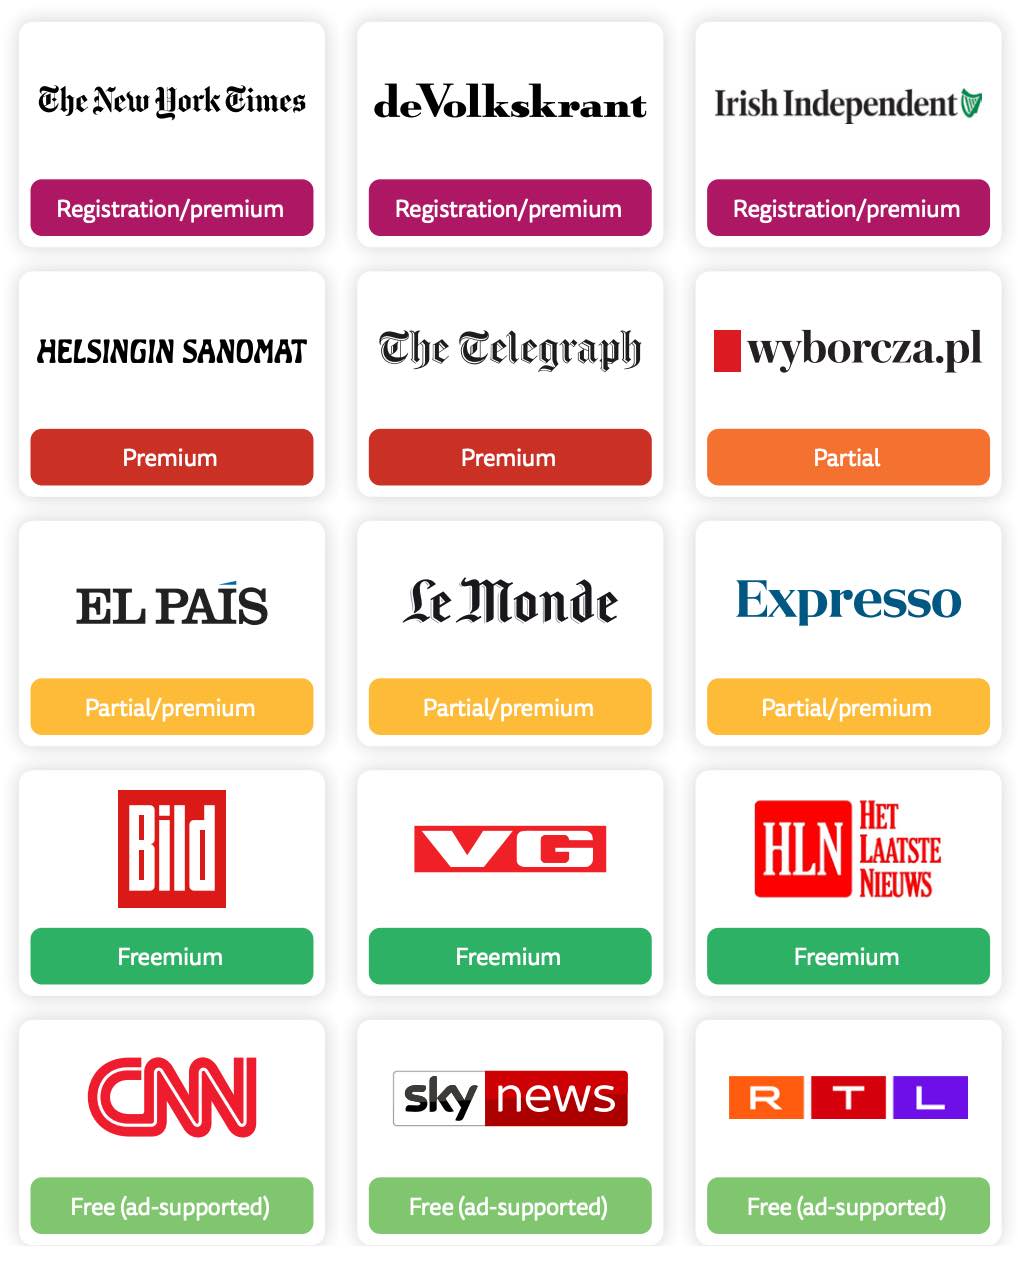 Reader revenue models of several newspapers